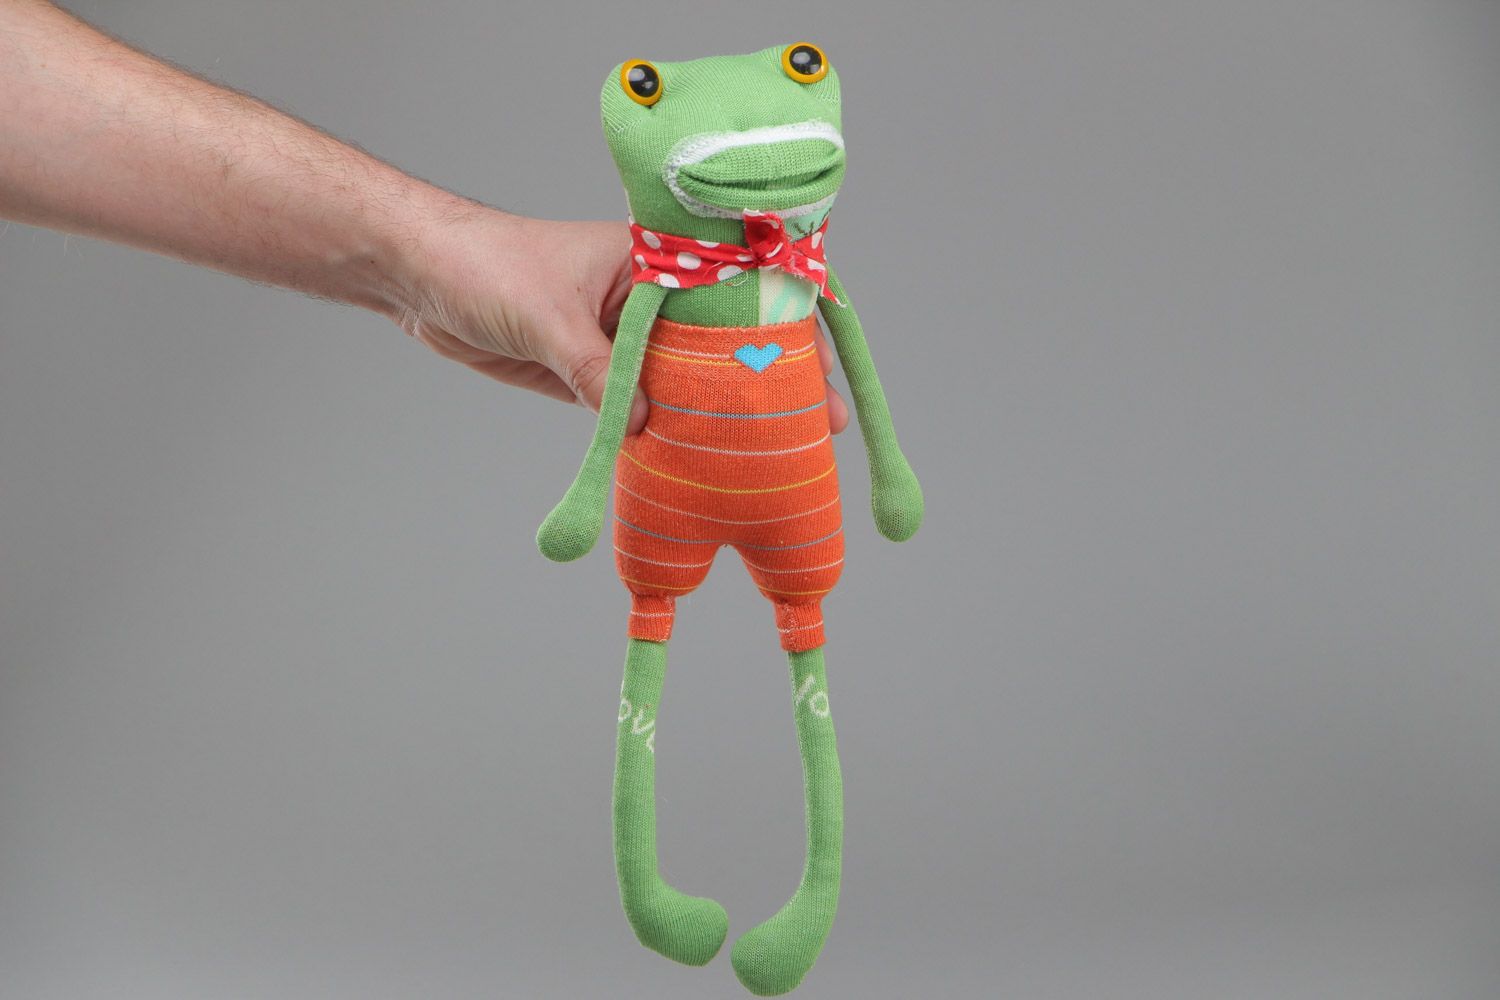 Joli jouet mou fait main en chaussettes grenouille verte cadeau pour enfant photo 4